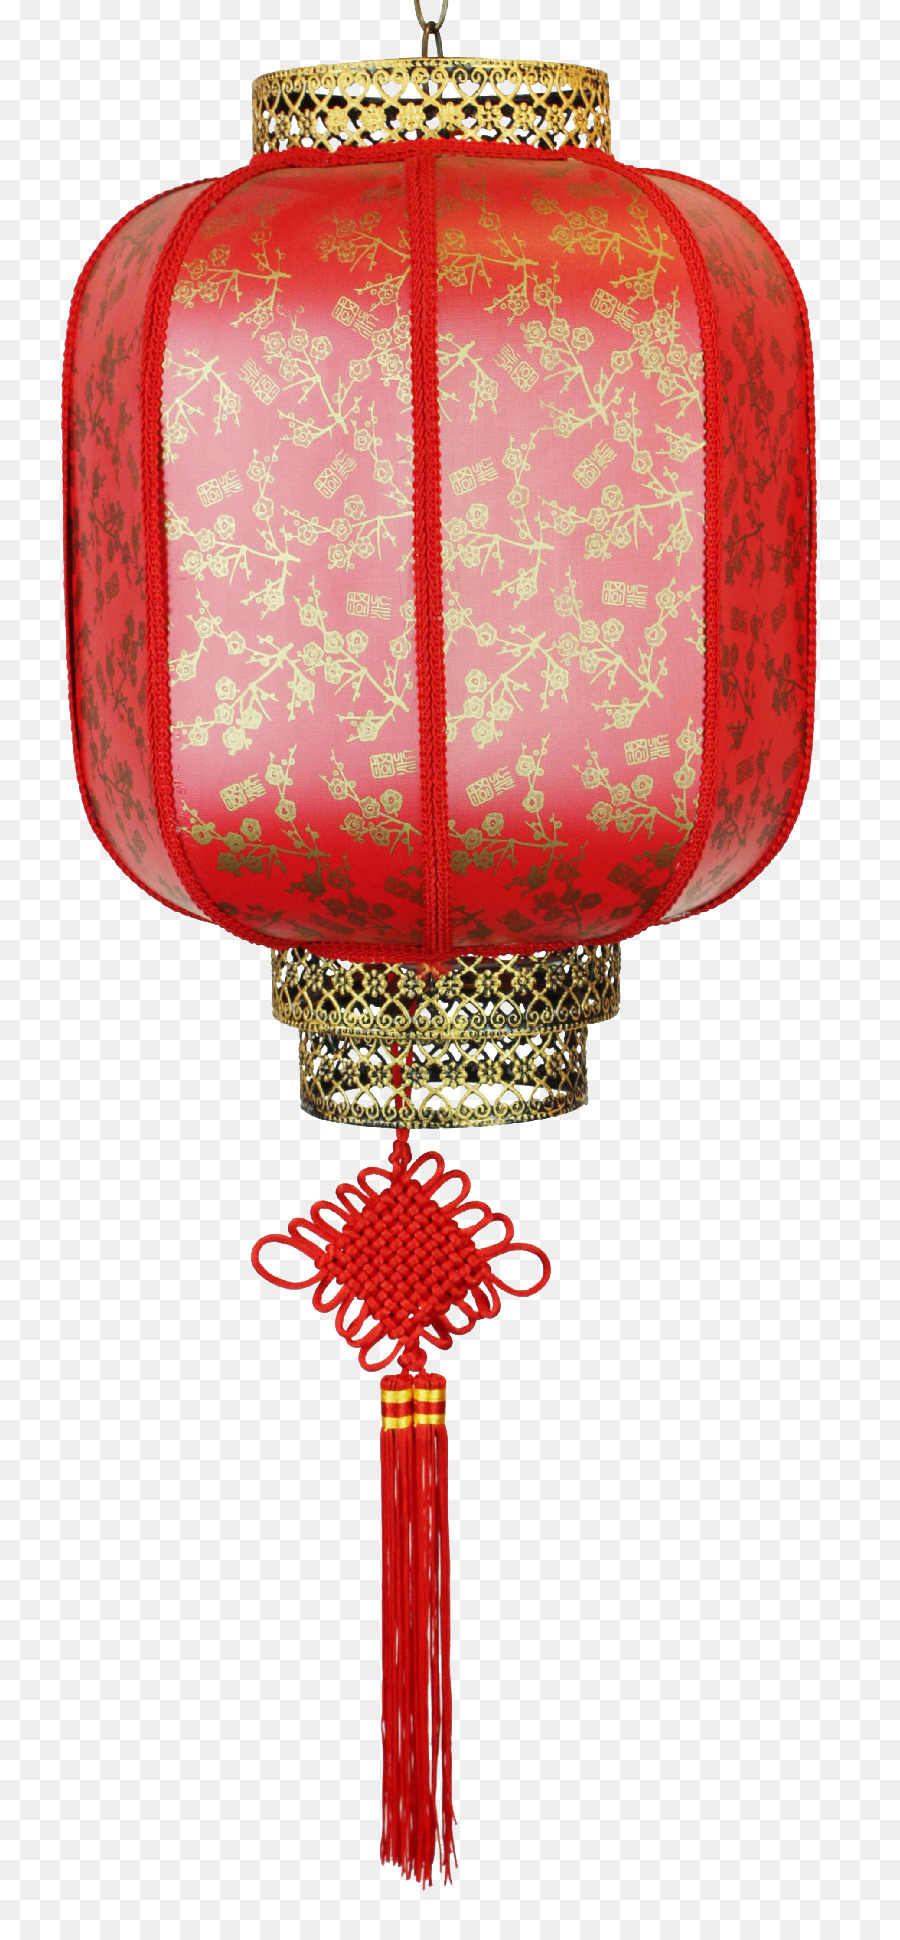 Festival Delle Lanterne Prima Il Festival Della Luna Piena Del Nuovo Anno Cinese - Lanterne rosse in metallo scolpito